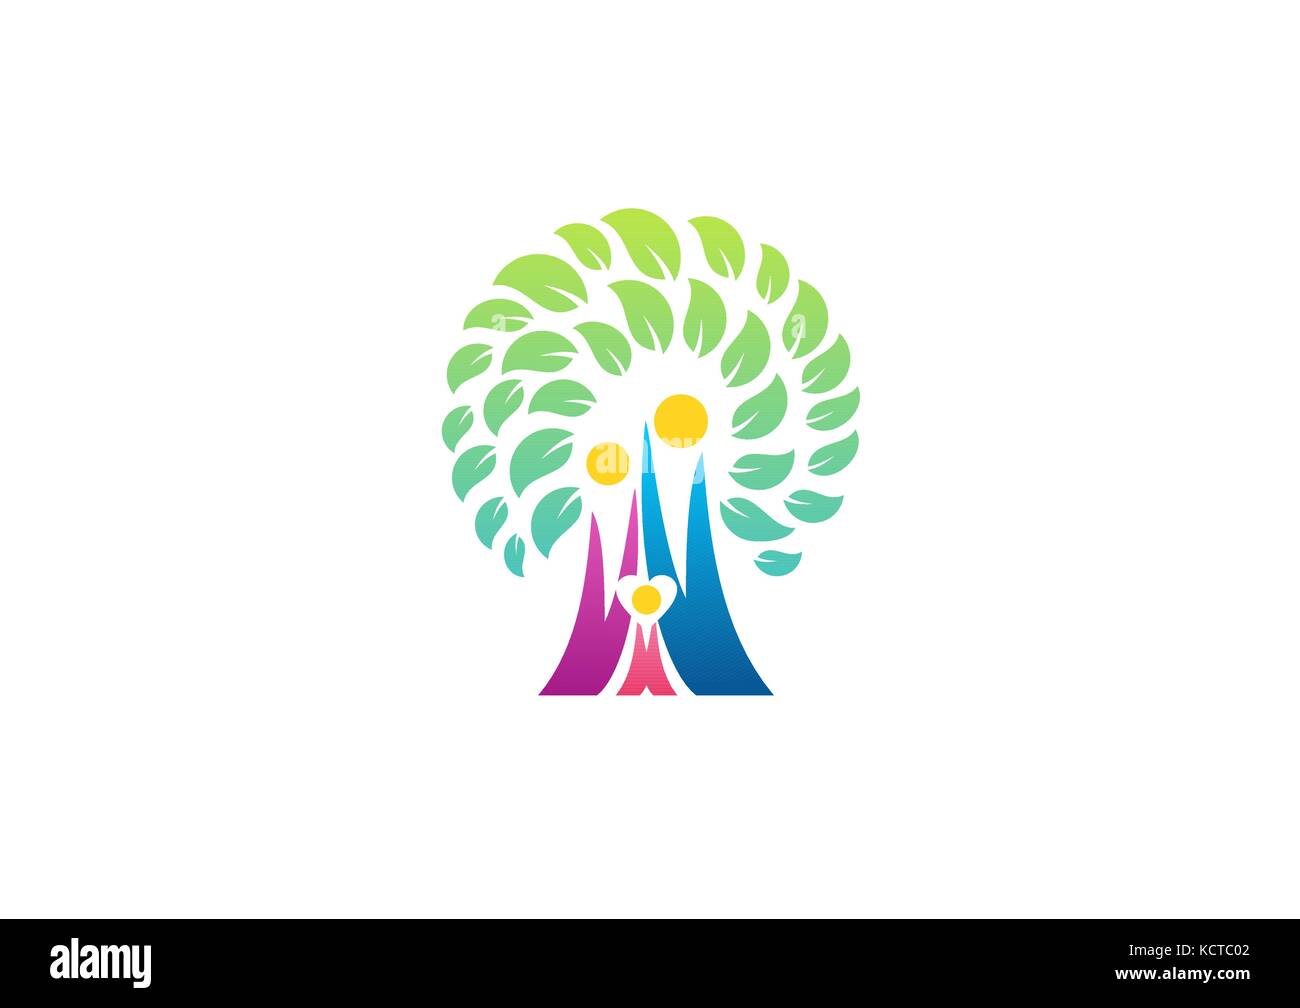 Albero genealogico di parenting icona logo simbolo disegno vettoriale, persone tree wellness family health care logo simbolo icona del design del vettore Illustrazione Vettoriale